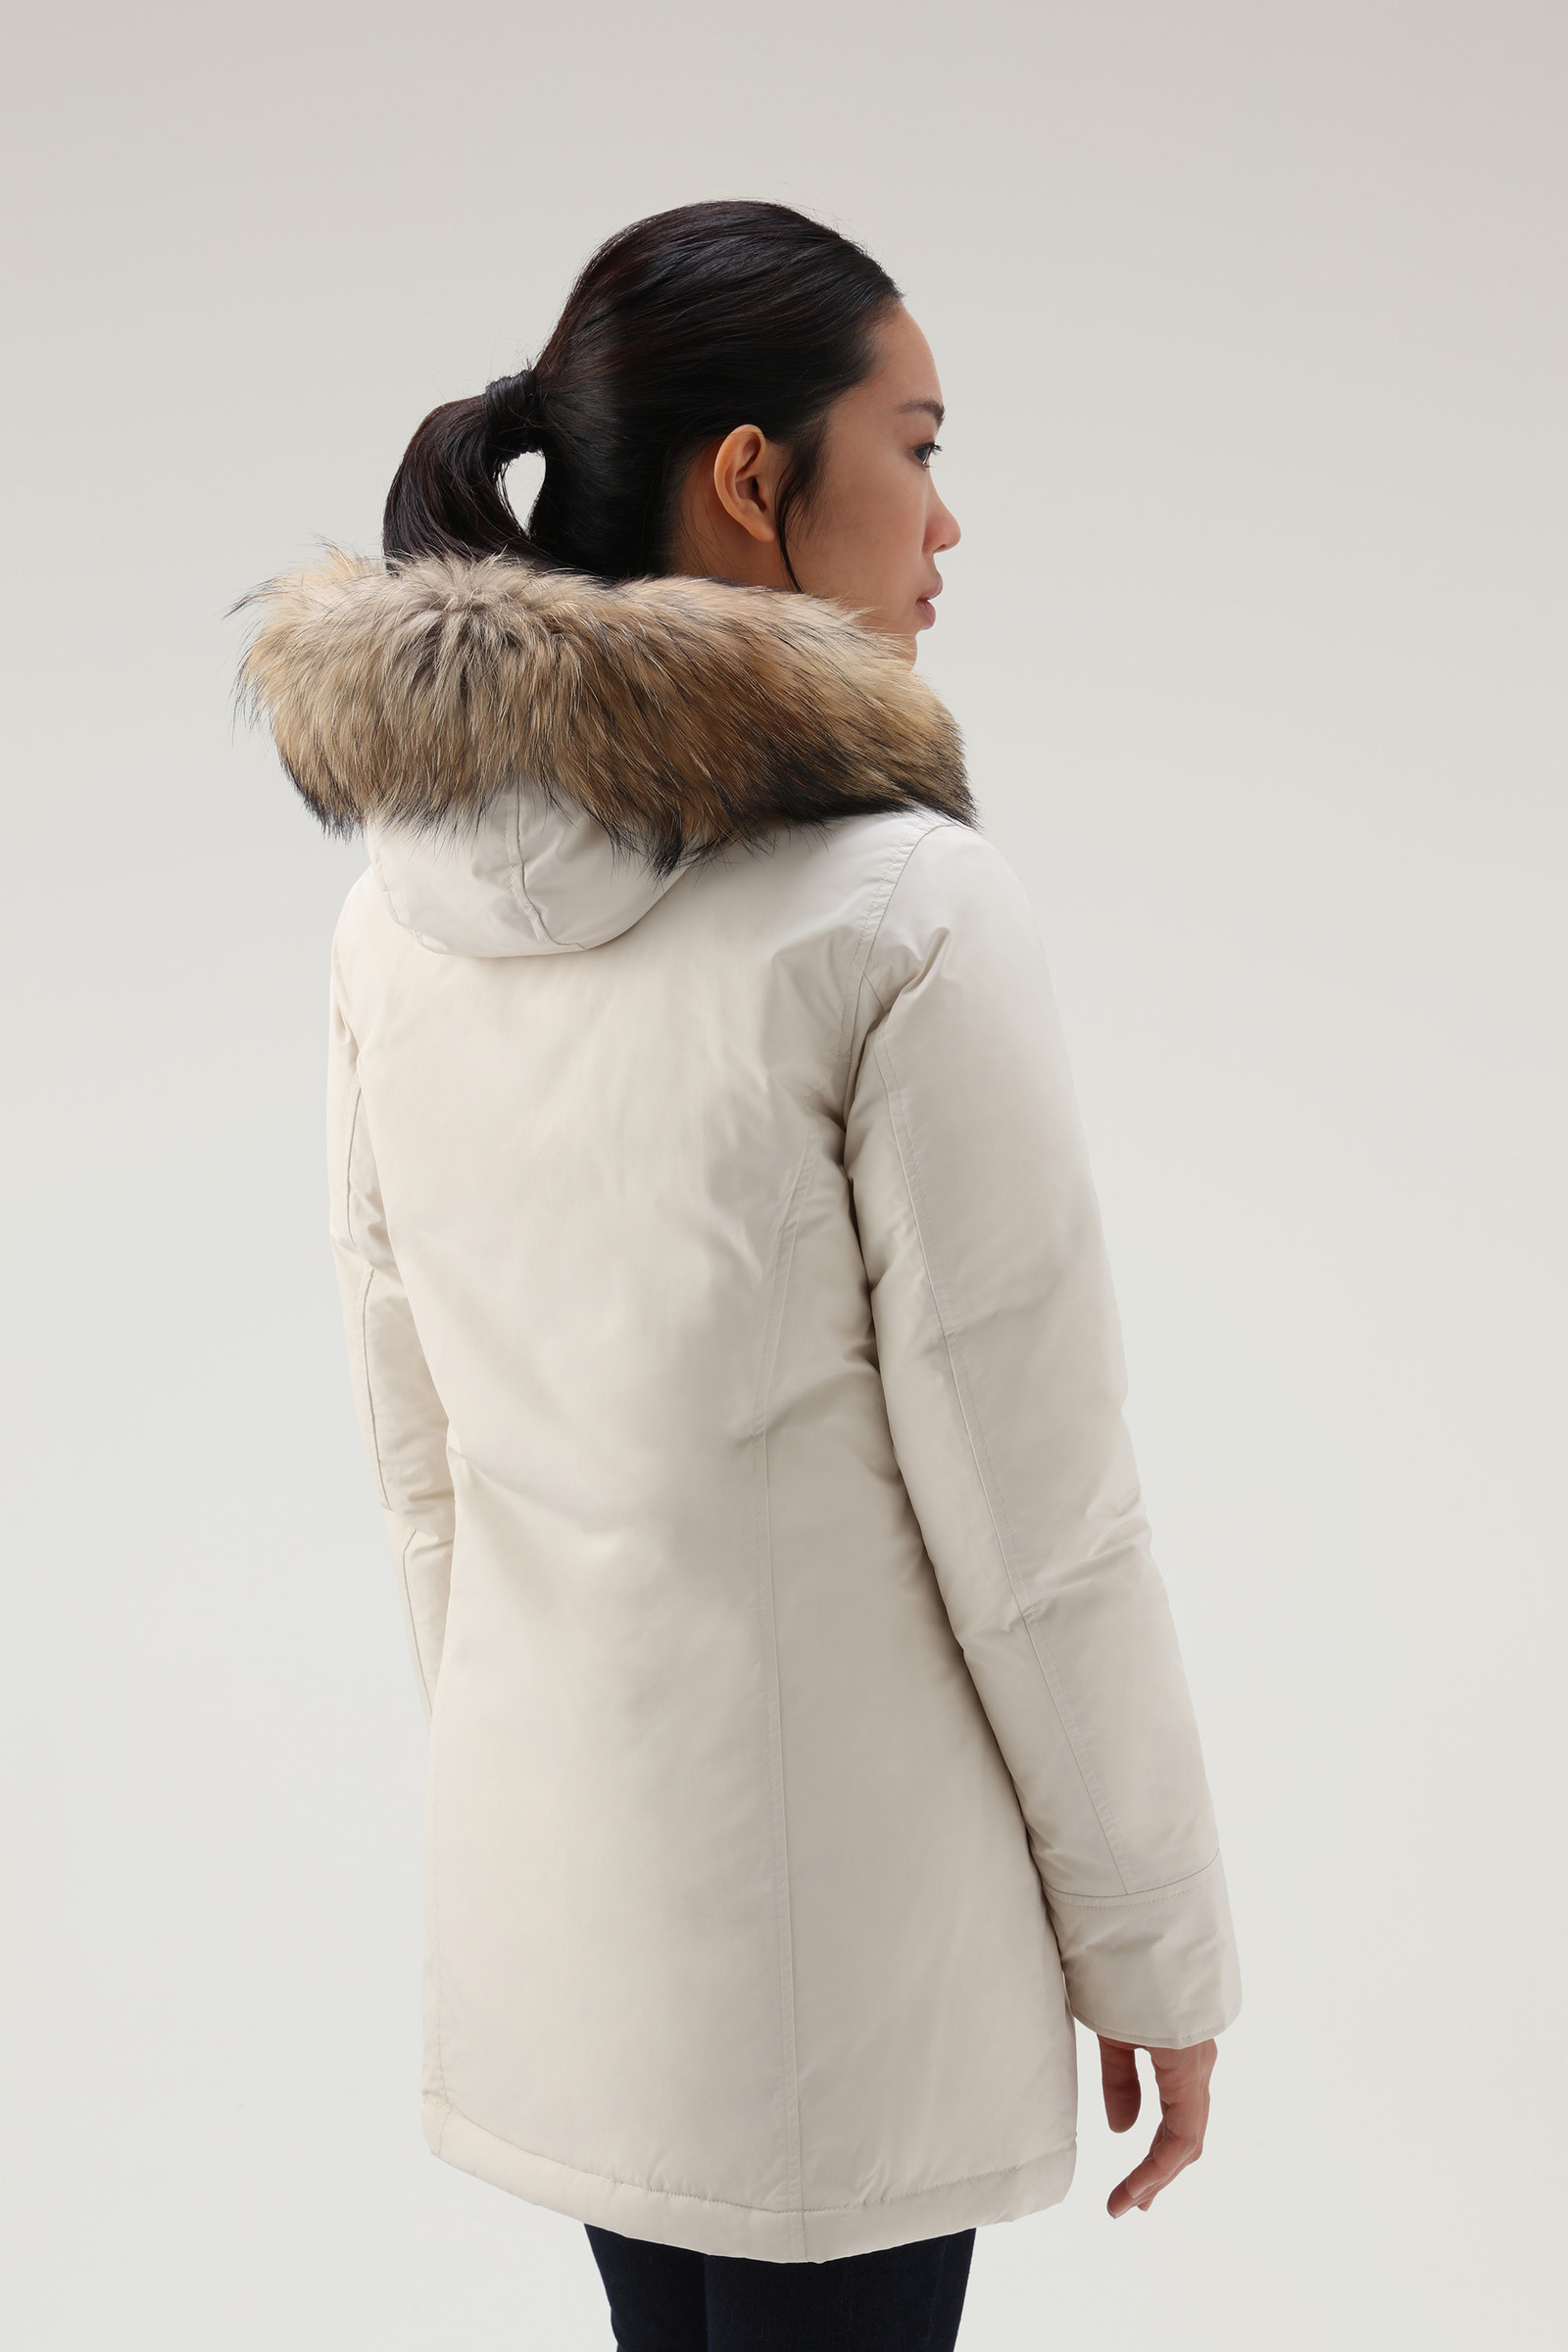 ik ben ziek smal verjaardag Women's Arctic Parka in Urban Touch with Detachable Fur White | Woolrich PL